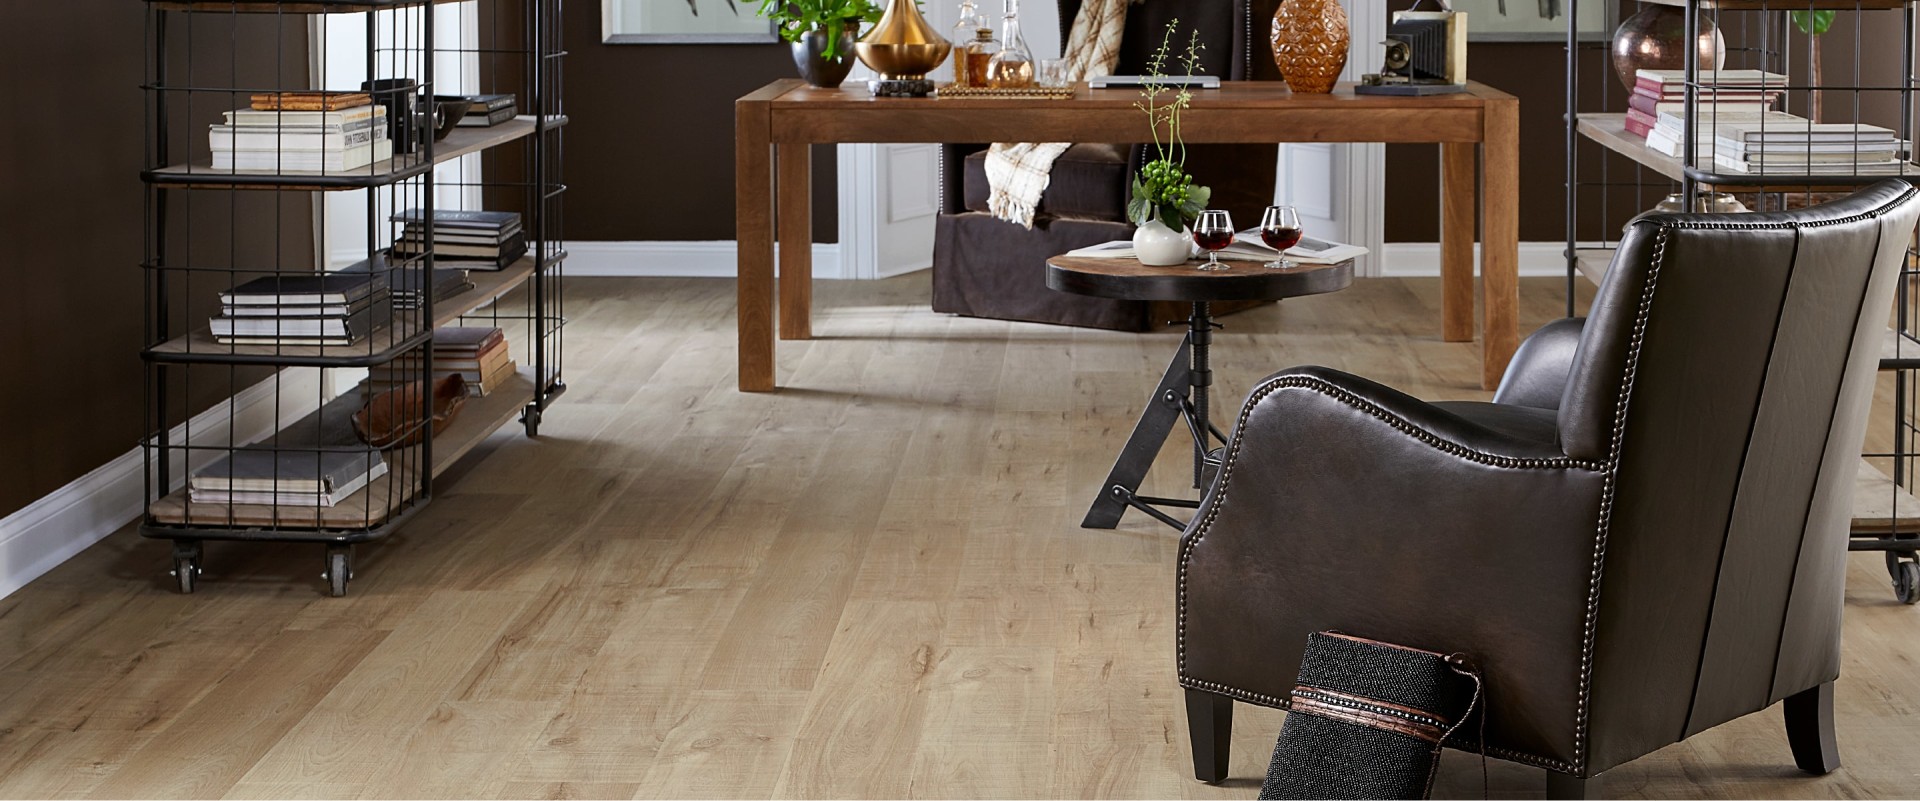 Pergo Timbercraft Wetprotect Leaf, Maple Leaf Premium Laminate Flooring